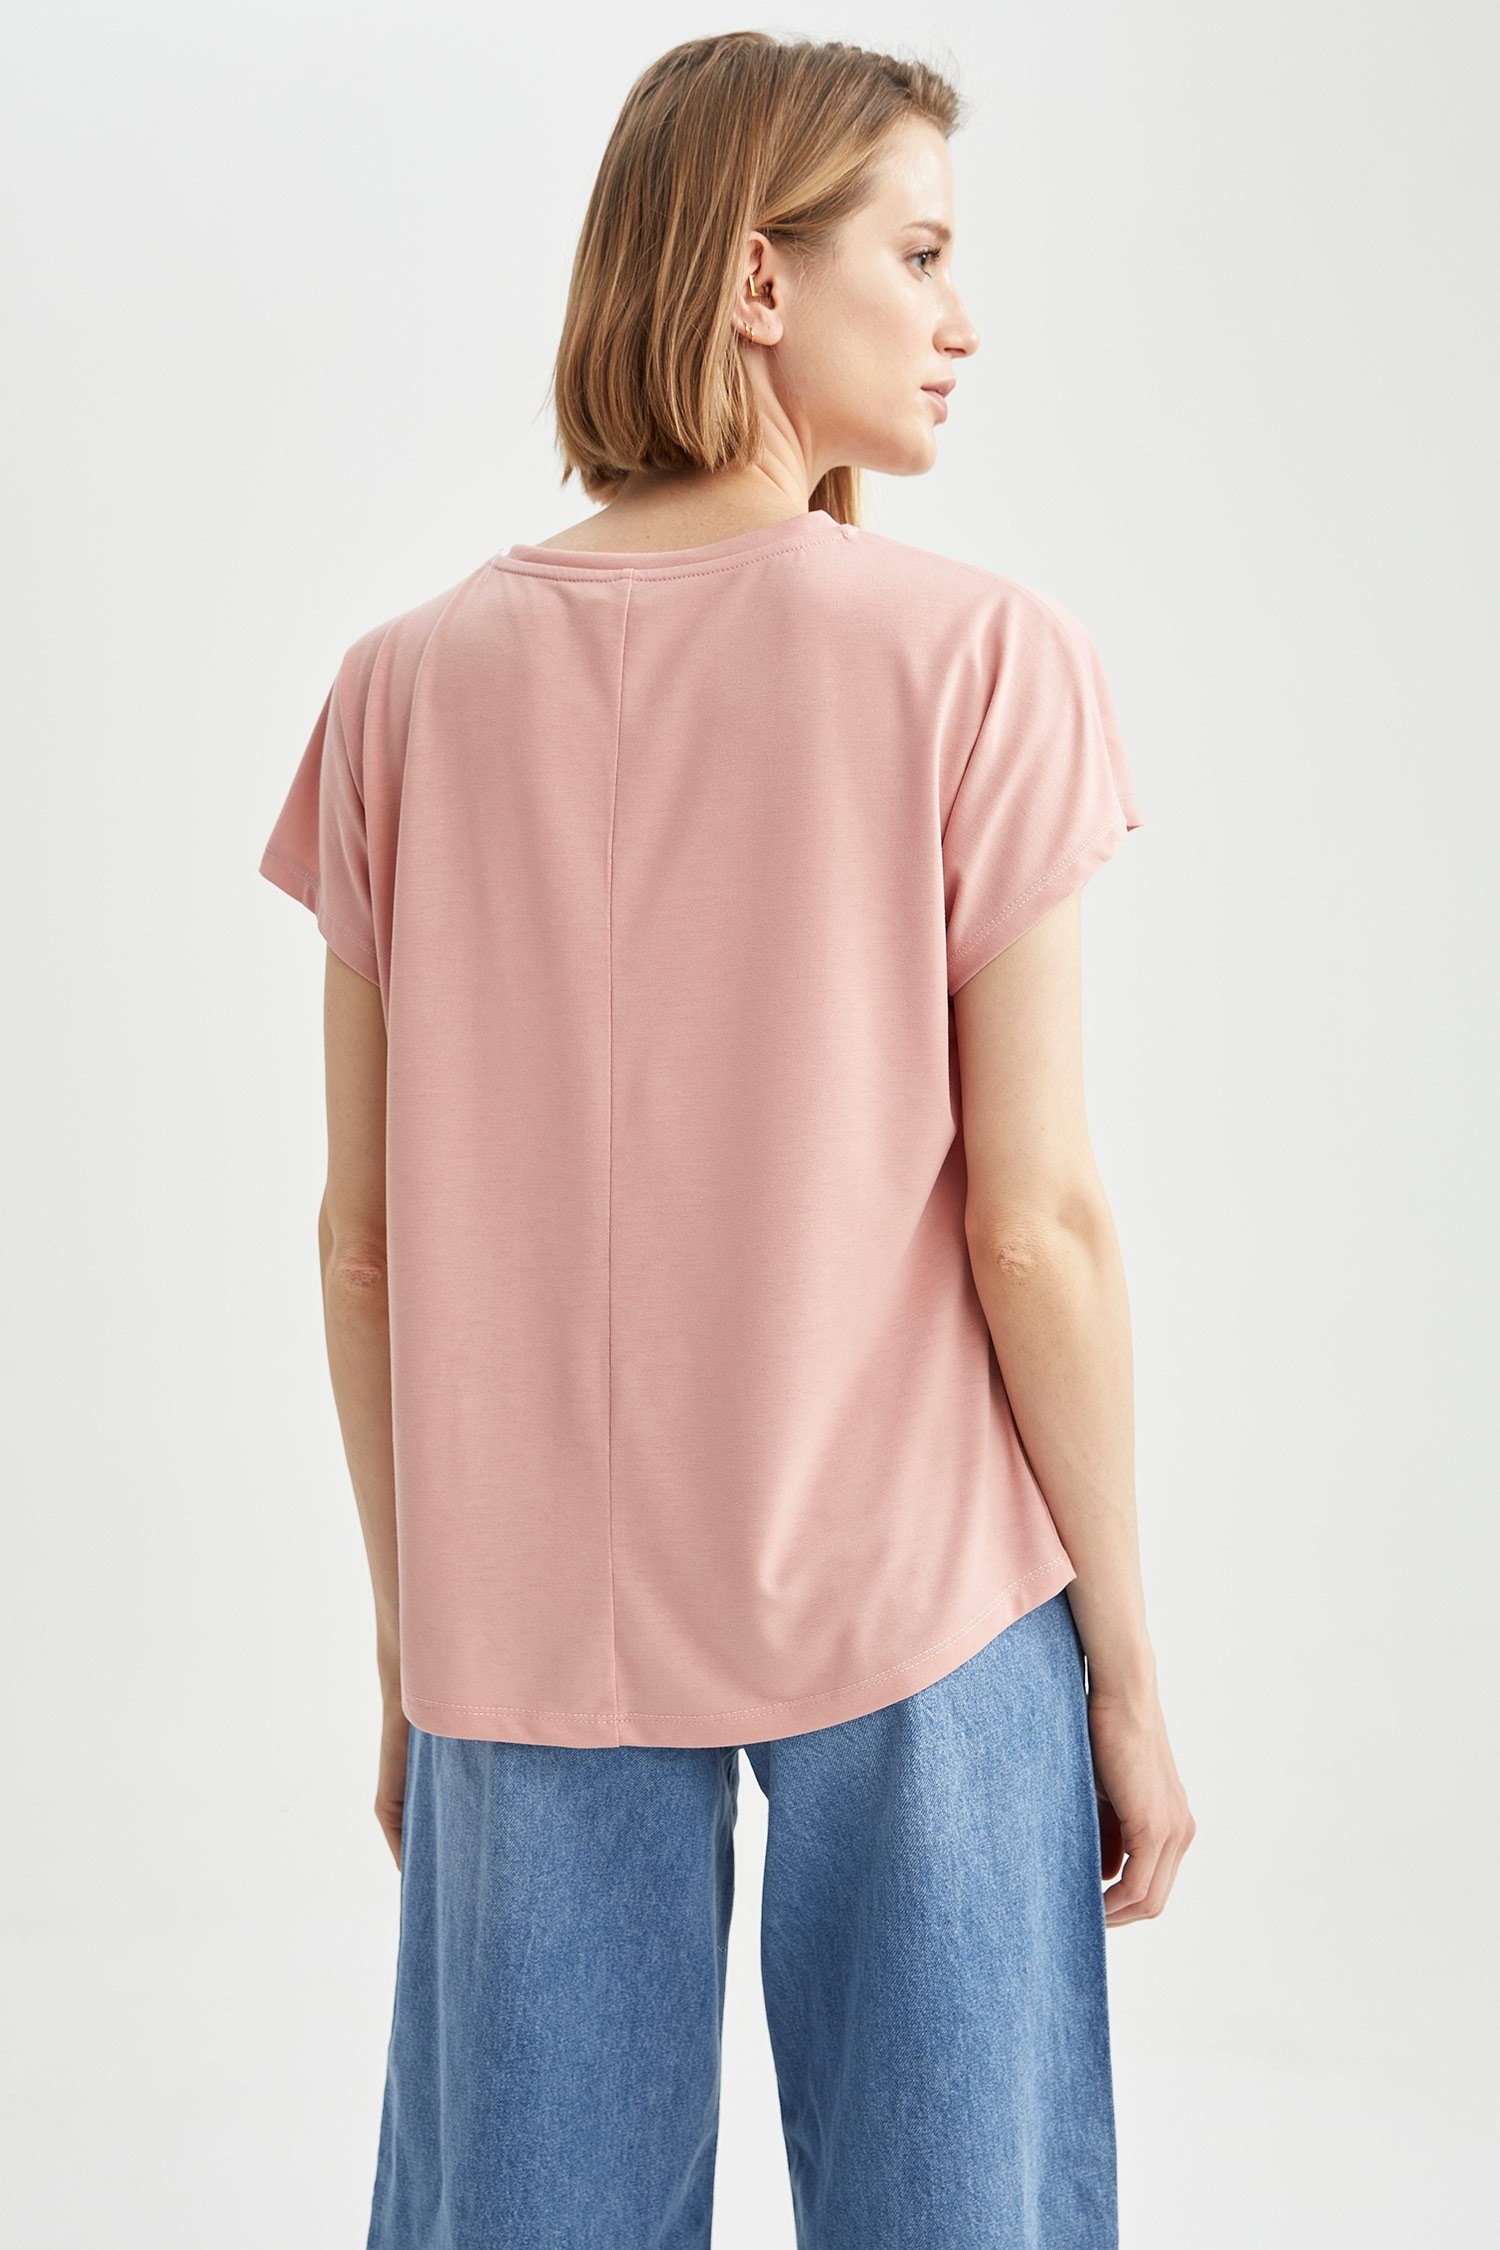 Damen Shirts DeFacto Kurzarmshirt Damen Kurzärmeliges T-Shirt REGULAR FIT C NECK